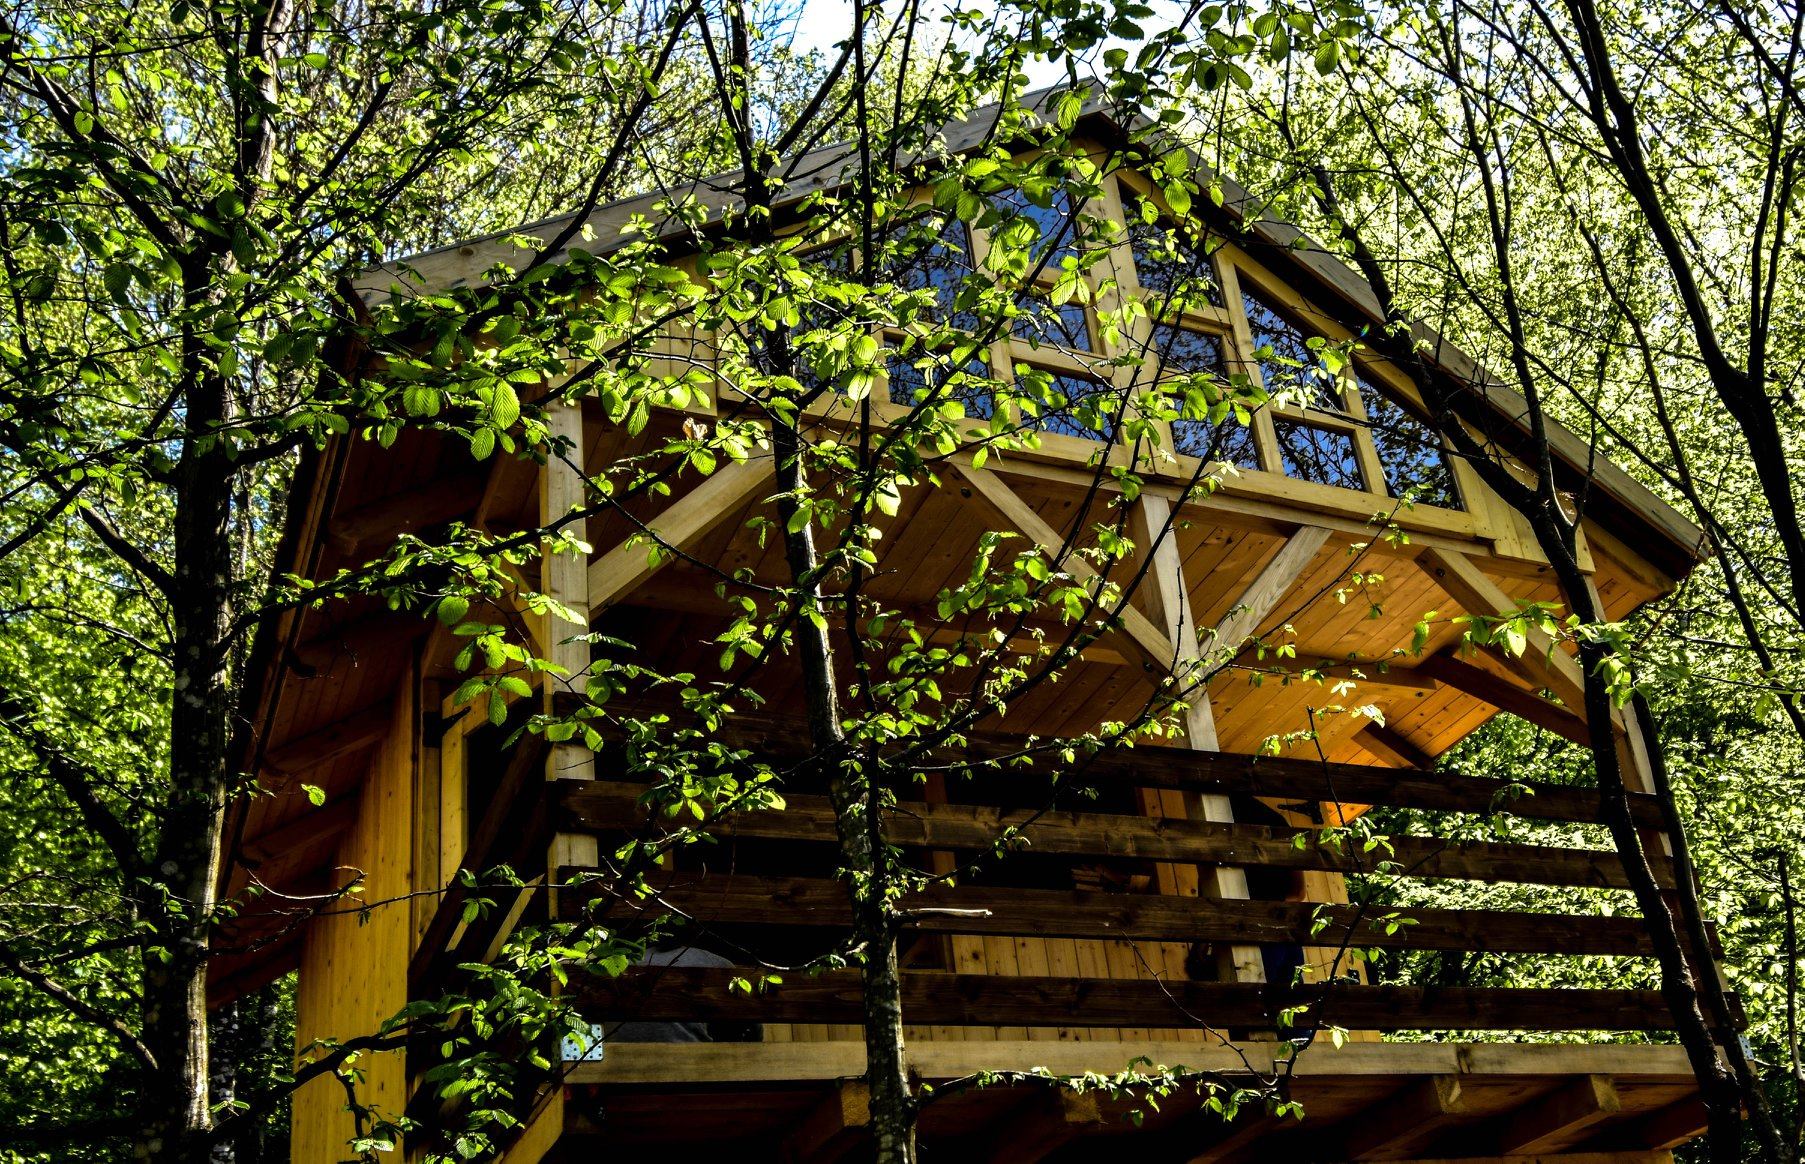 Ova kućica na drvetu nalazi se u mjestu Zakrajc kraj Skrada. Dio je turističkog sela Robin's Hood koje se bavi robinzonskim turizmom. 